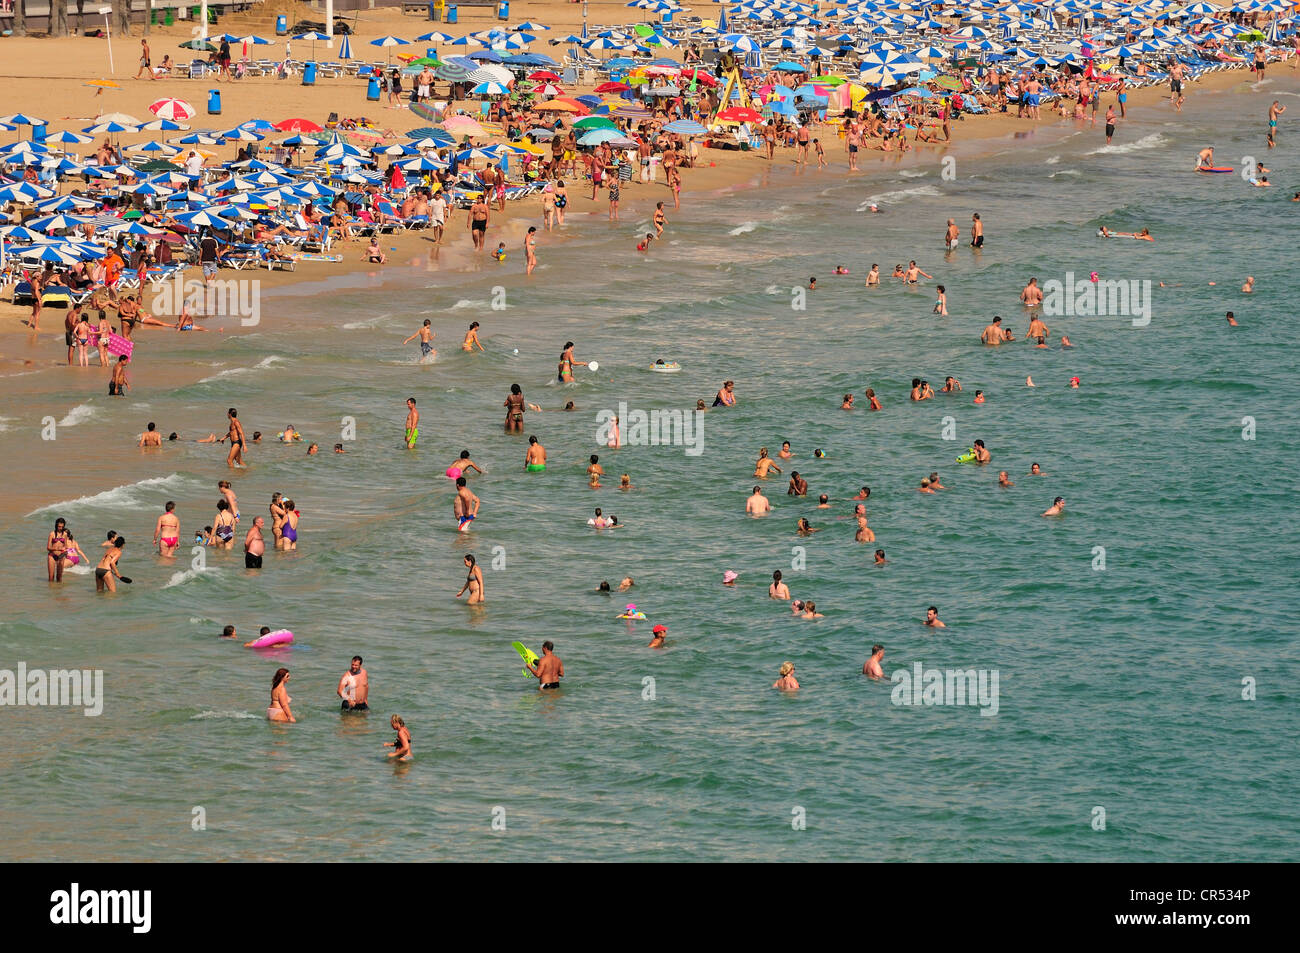 Les baigneurs sur la plage de Playa Levante, le tourisme de masse, Benidorm, Costa Blanca, Espagne, Europe Banque D'Images